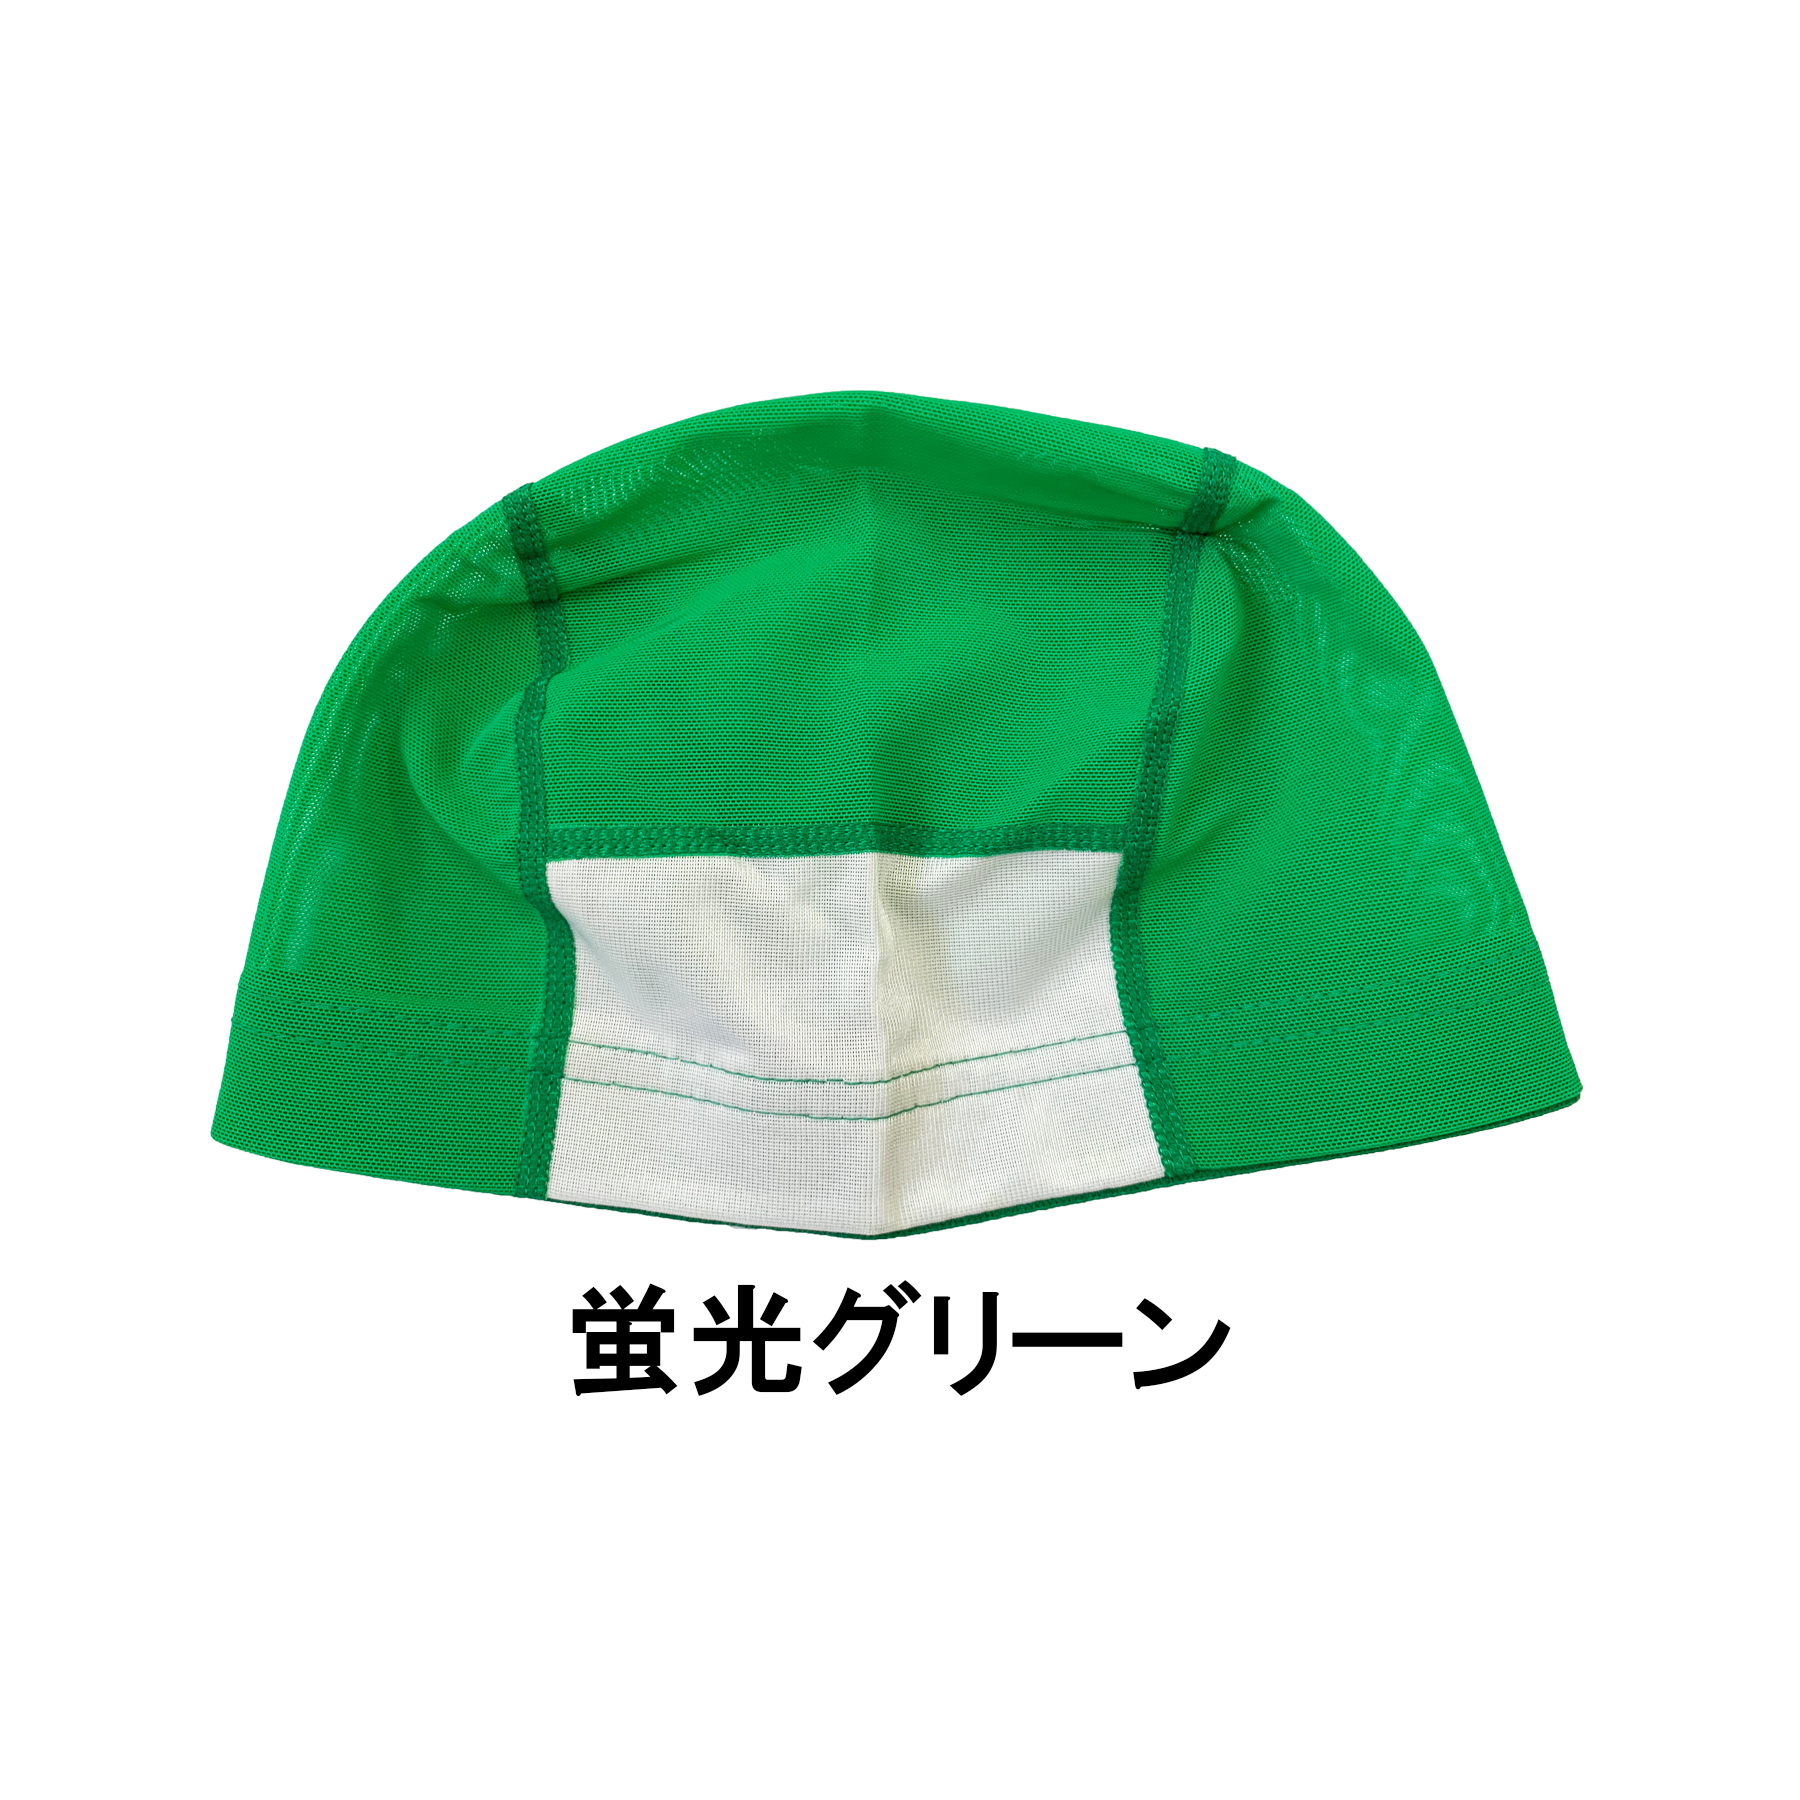 メッシュスイムキャップ ネーム型 日本製 水泳帽子 水泳帽 水泳